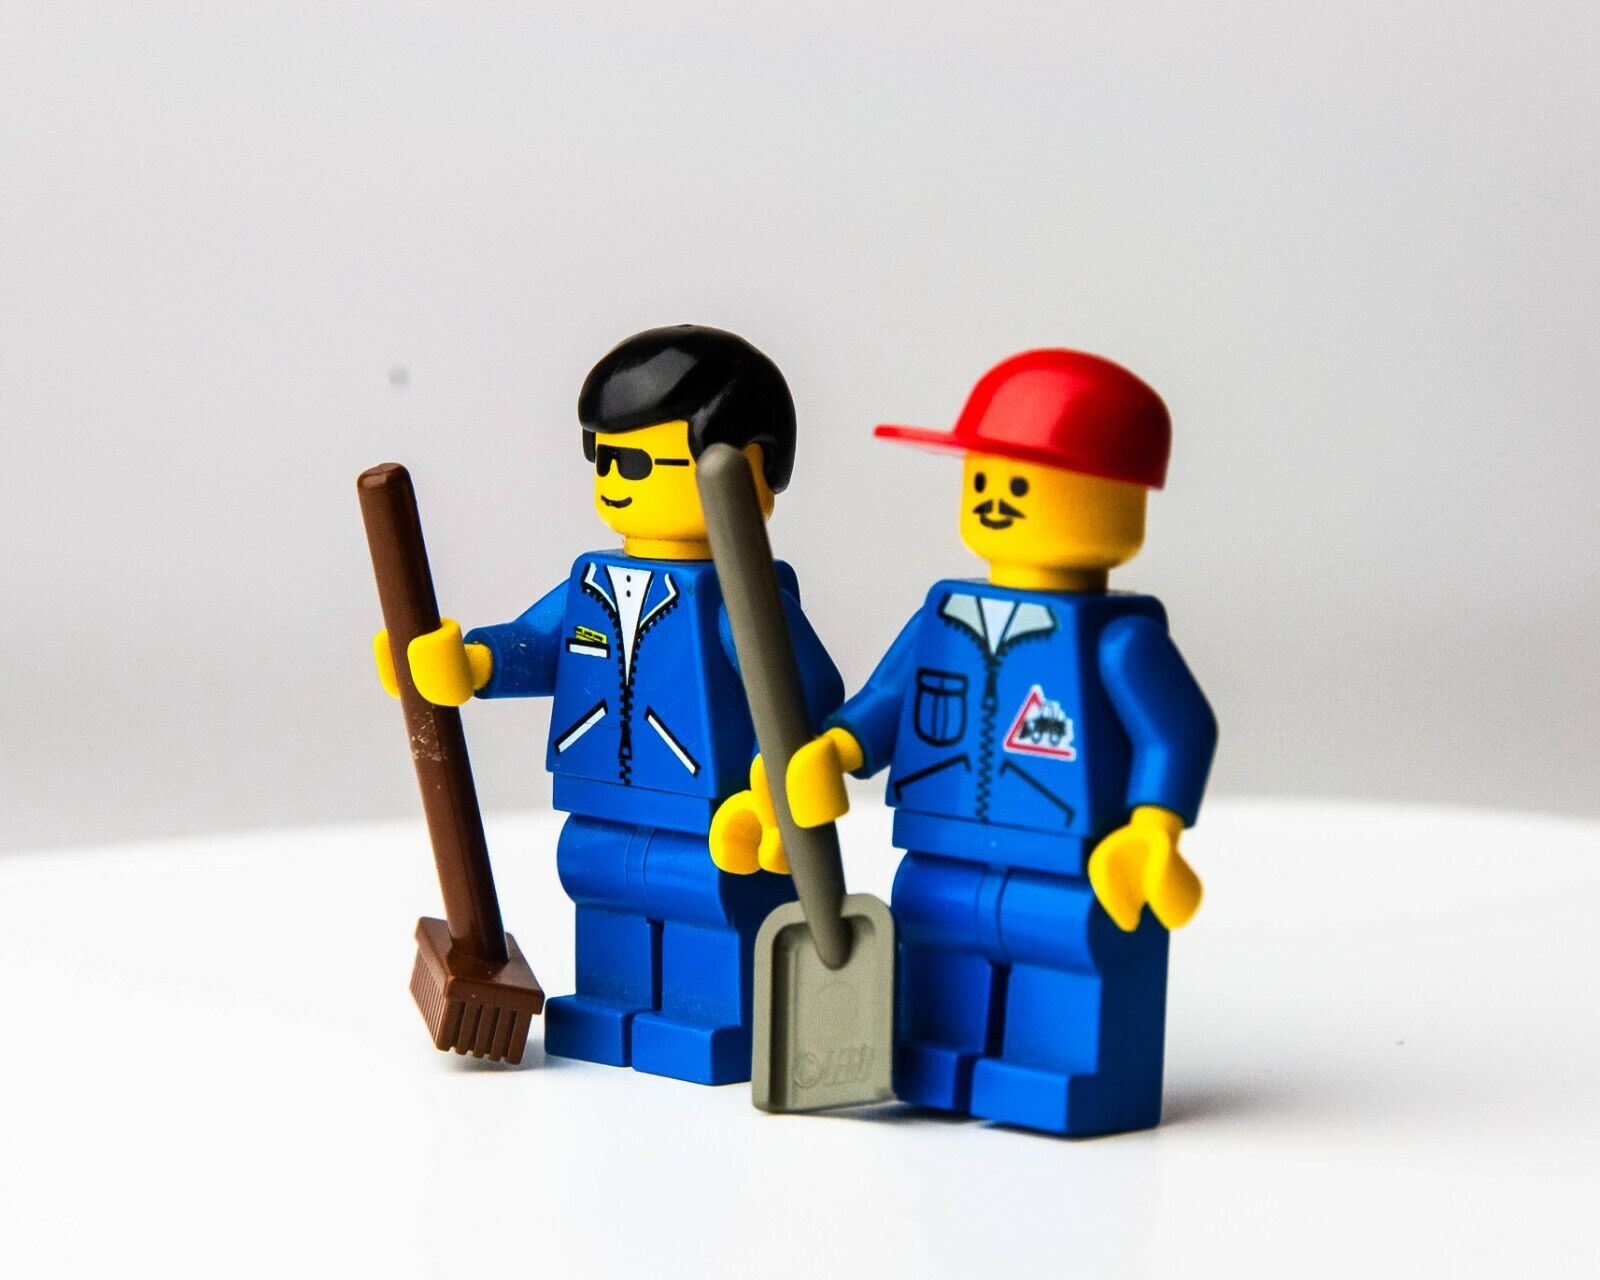 LEGO Construction Workers Lot of 2 - Dumper - 6447 (jbl007 jbl009) Minifigures